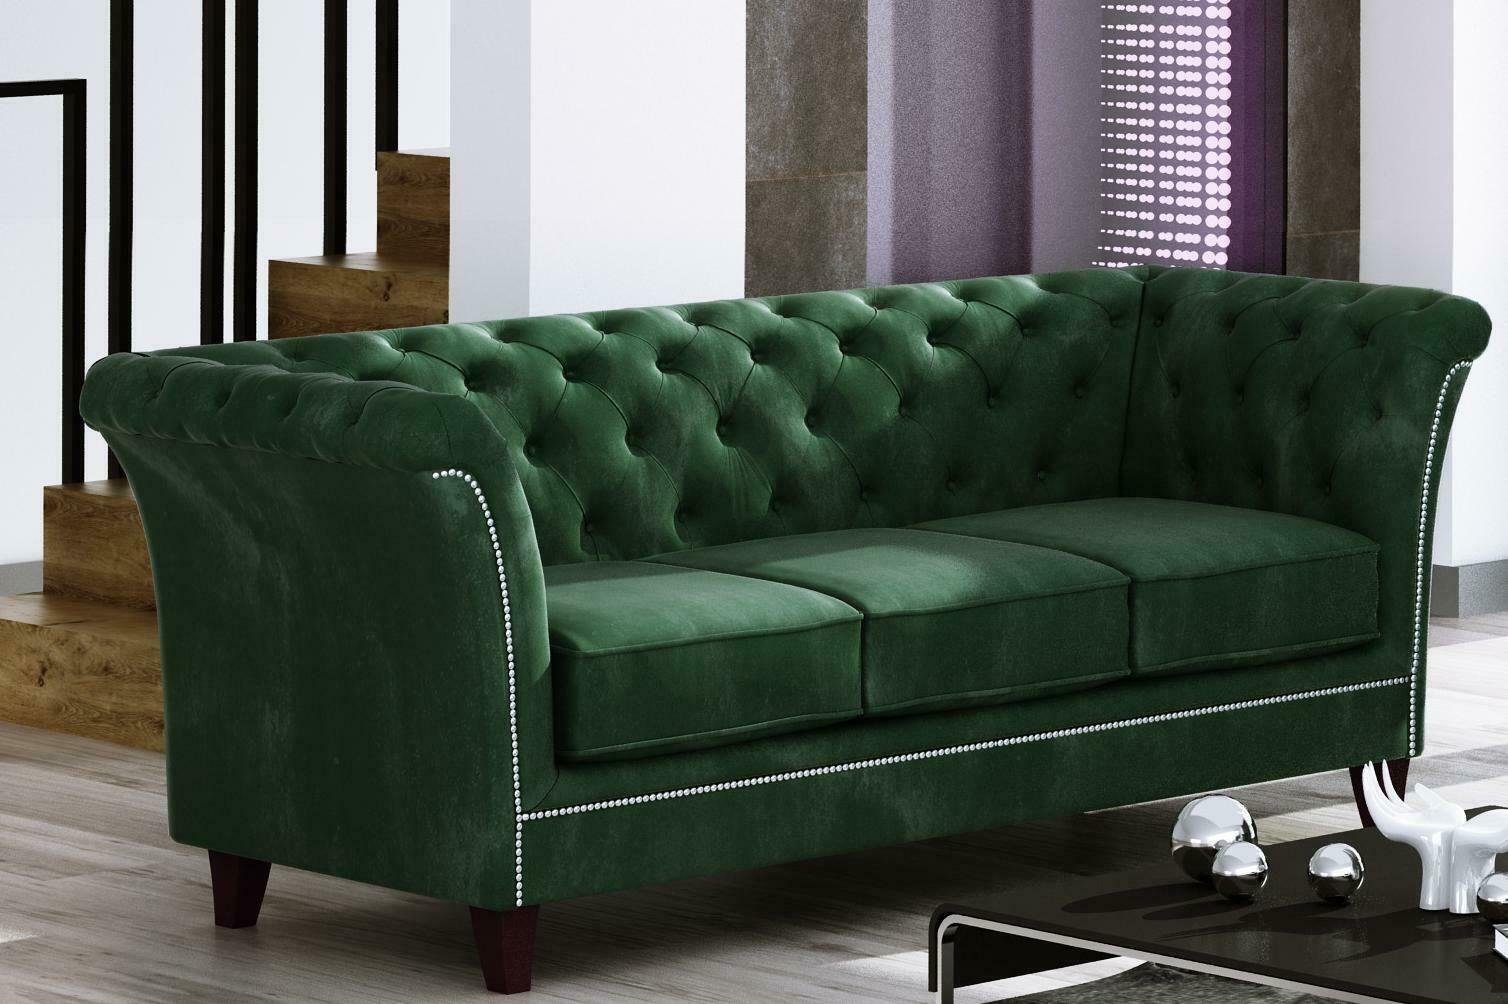 JVmoebel Sofa Grüner Dreisitzer Chesterfield Möbel Luxus 3-Sitzer Couch Edel Neu, Made in Europe Grau | Alle Sofas